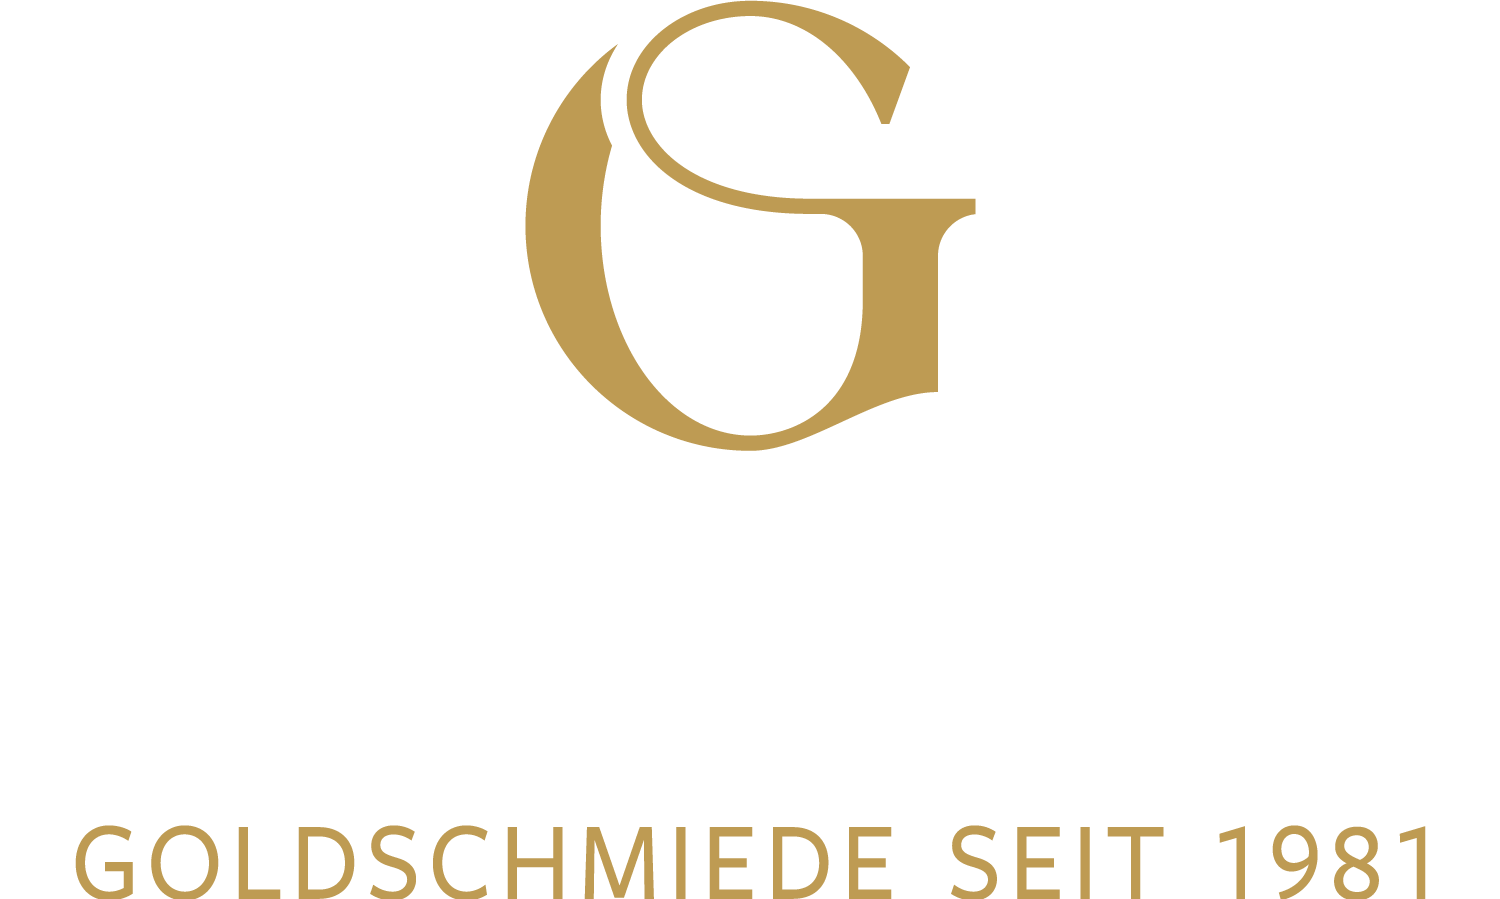 Goldschmiede Speckmann